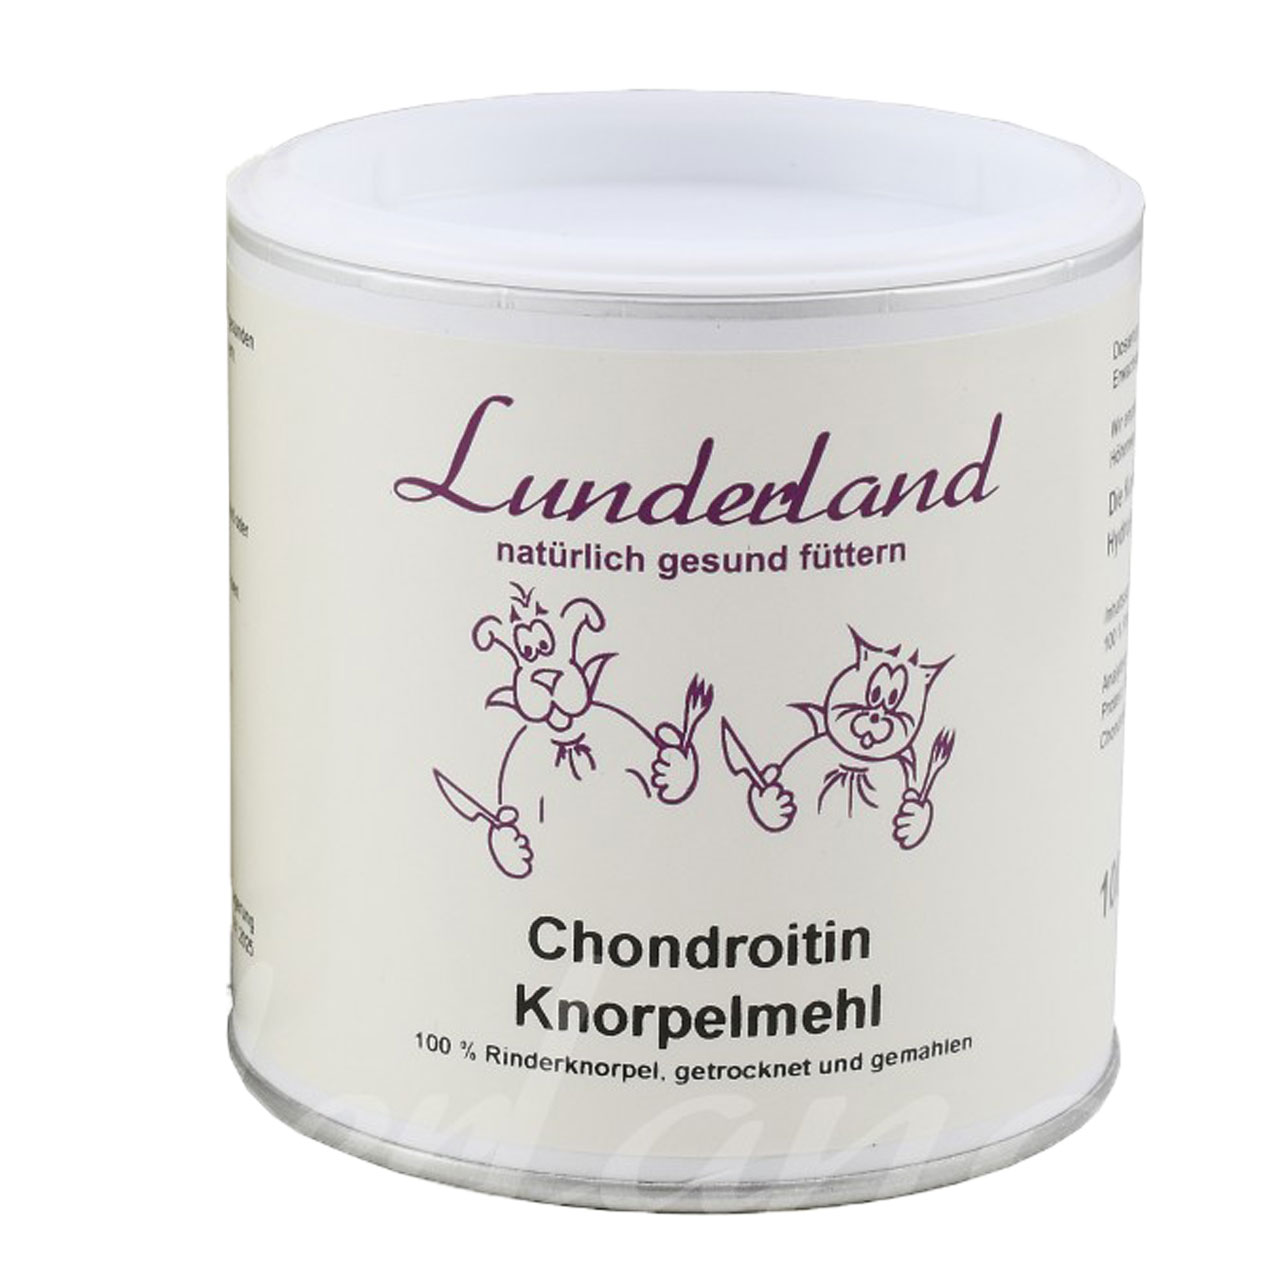 Knorpelmehl mit Chondroitin von Lunderland